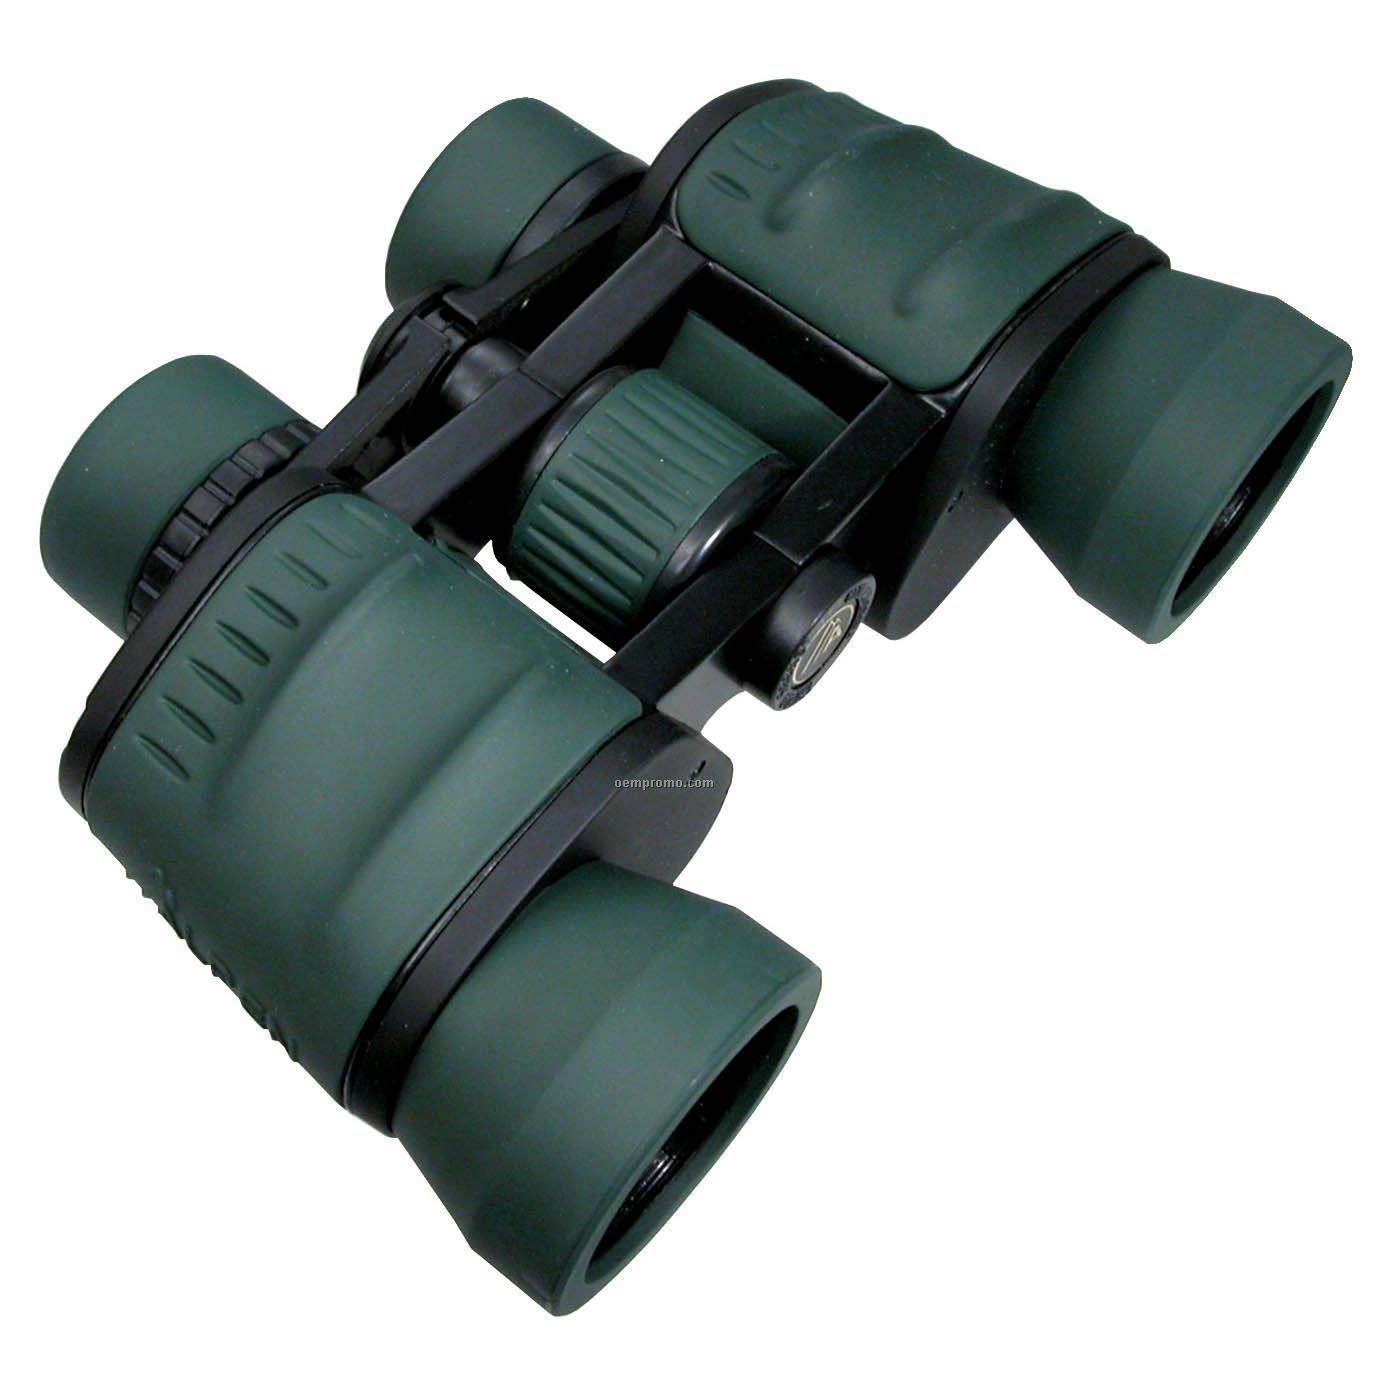 Alpen 8x42 Wide Angle Pro Binoculars W/ Multi-coated Lens